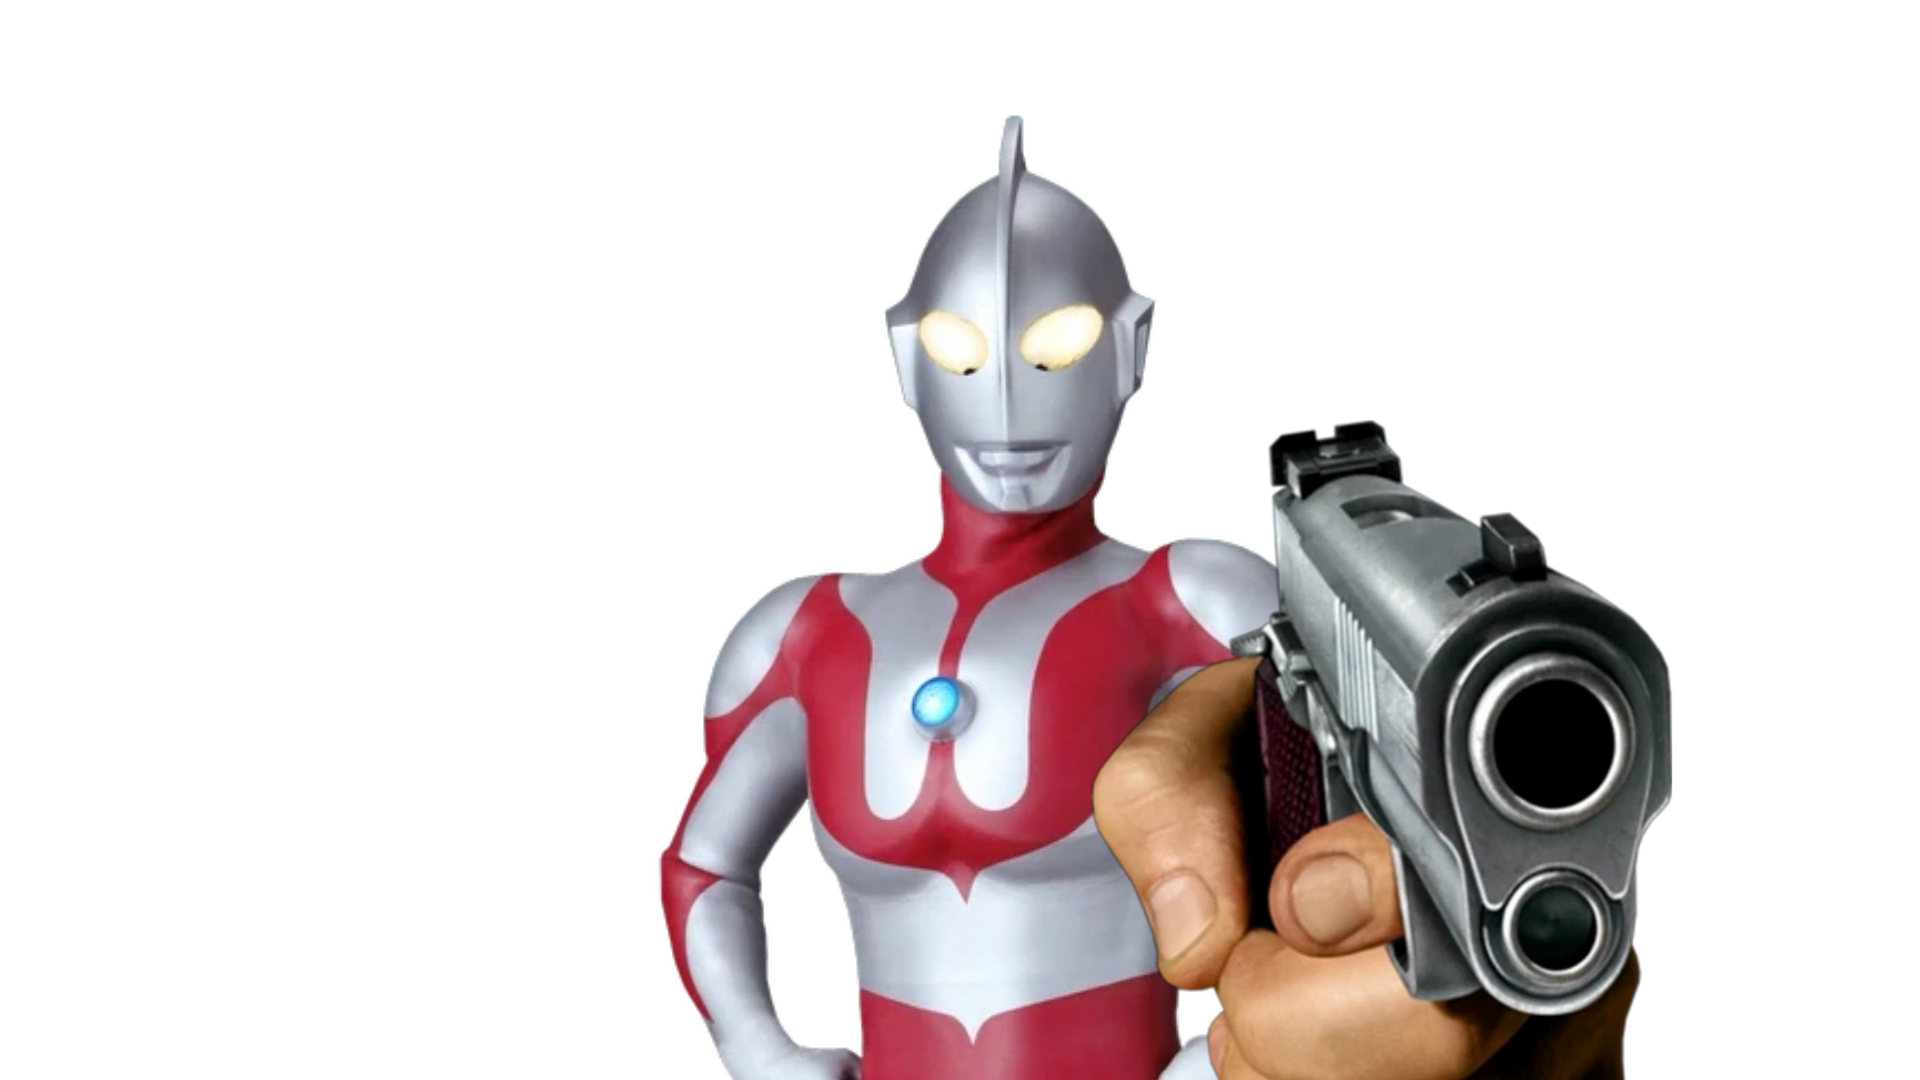 High Quality Ultraman holding a gun Blank Meme Template